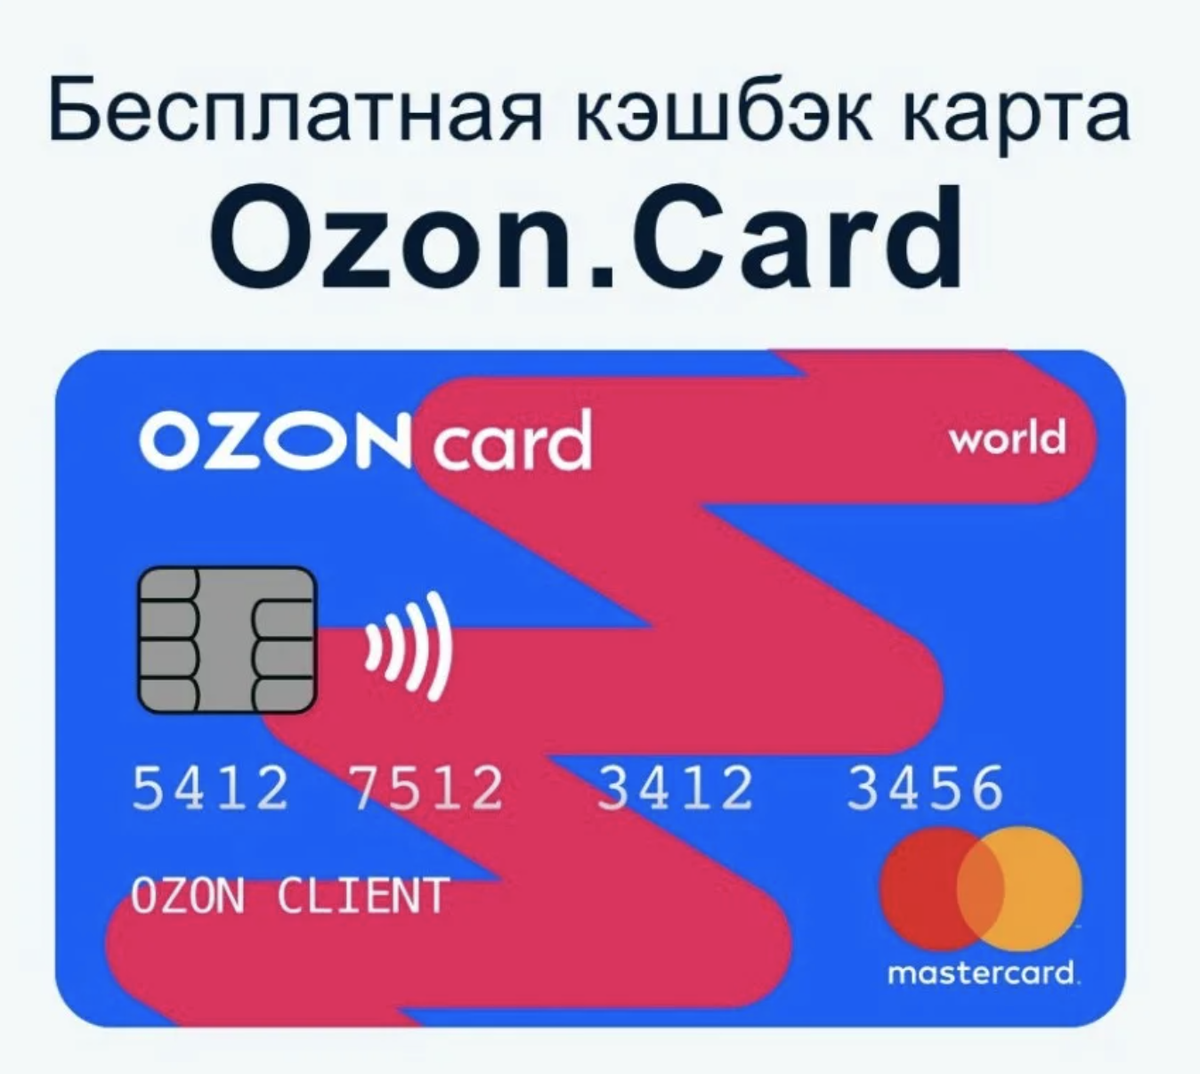 Как взять кредит на озон карту. OZON карта. Карта OZON Card. Банковская карта Озон. Карта кэшбэк.